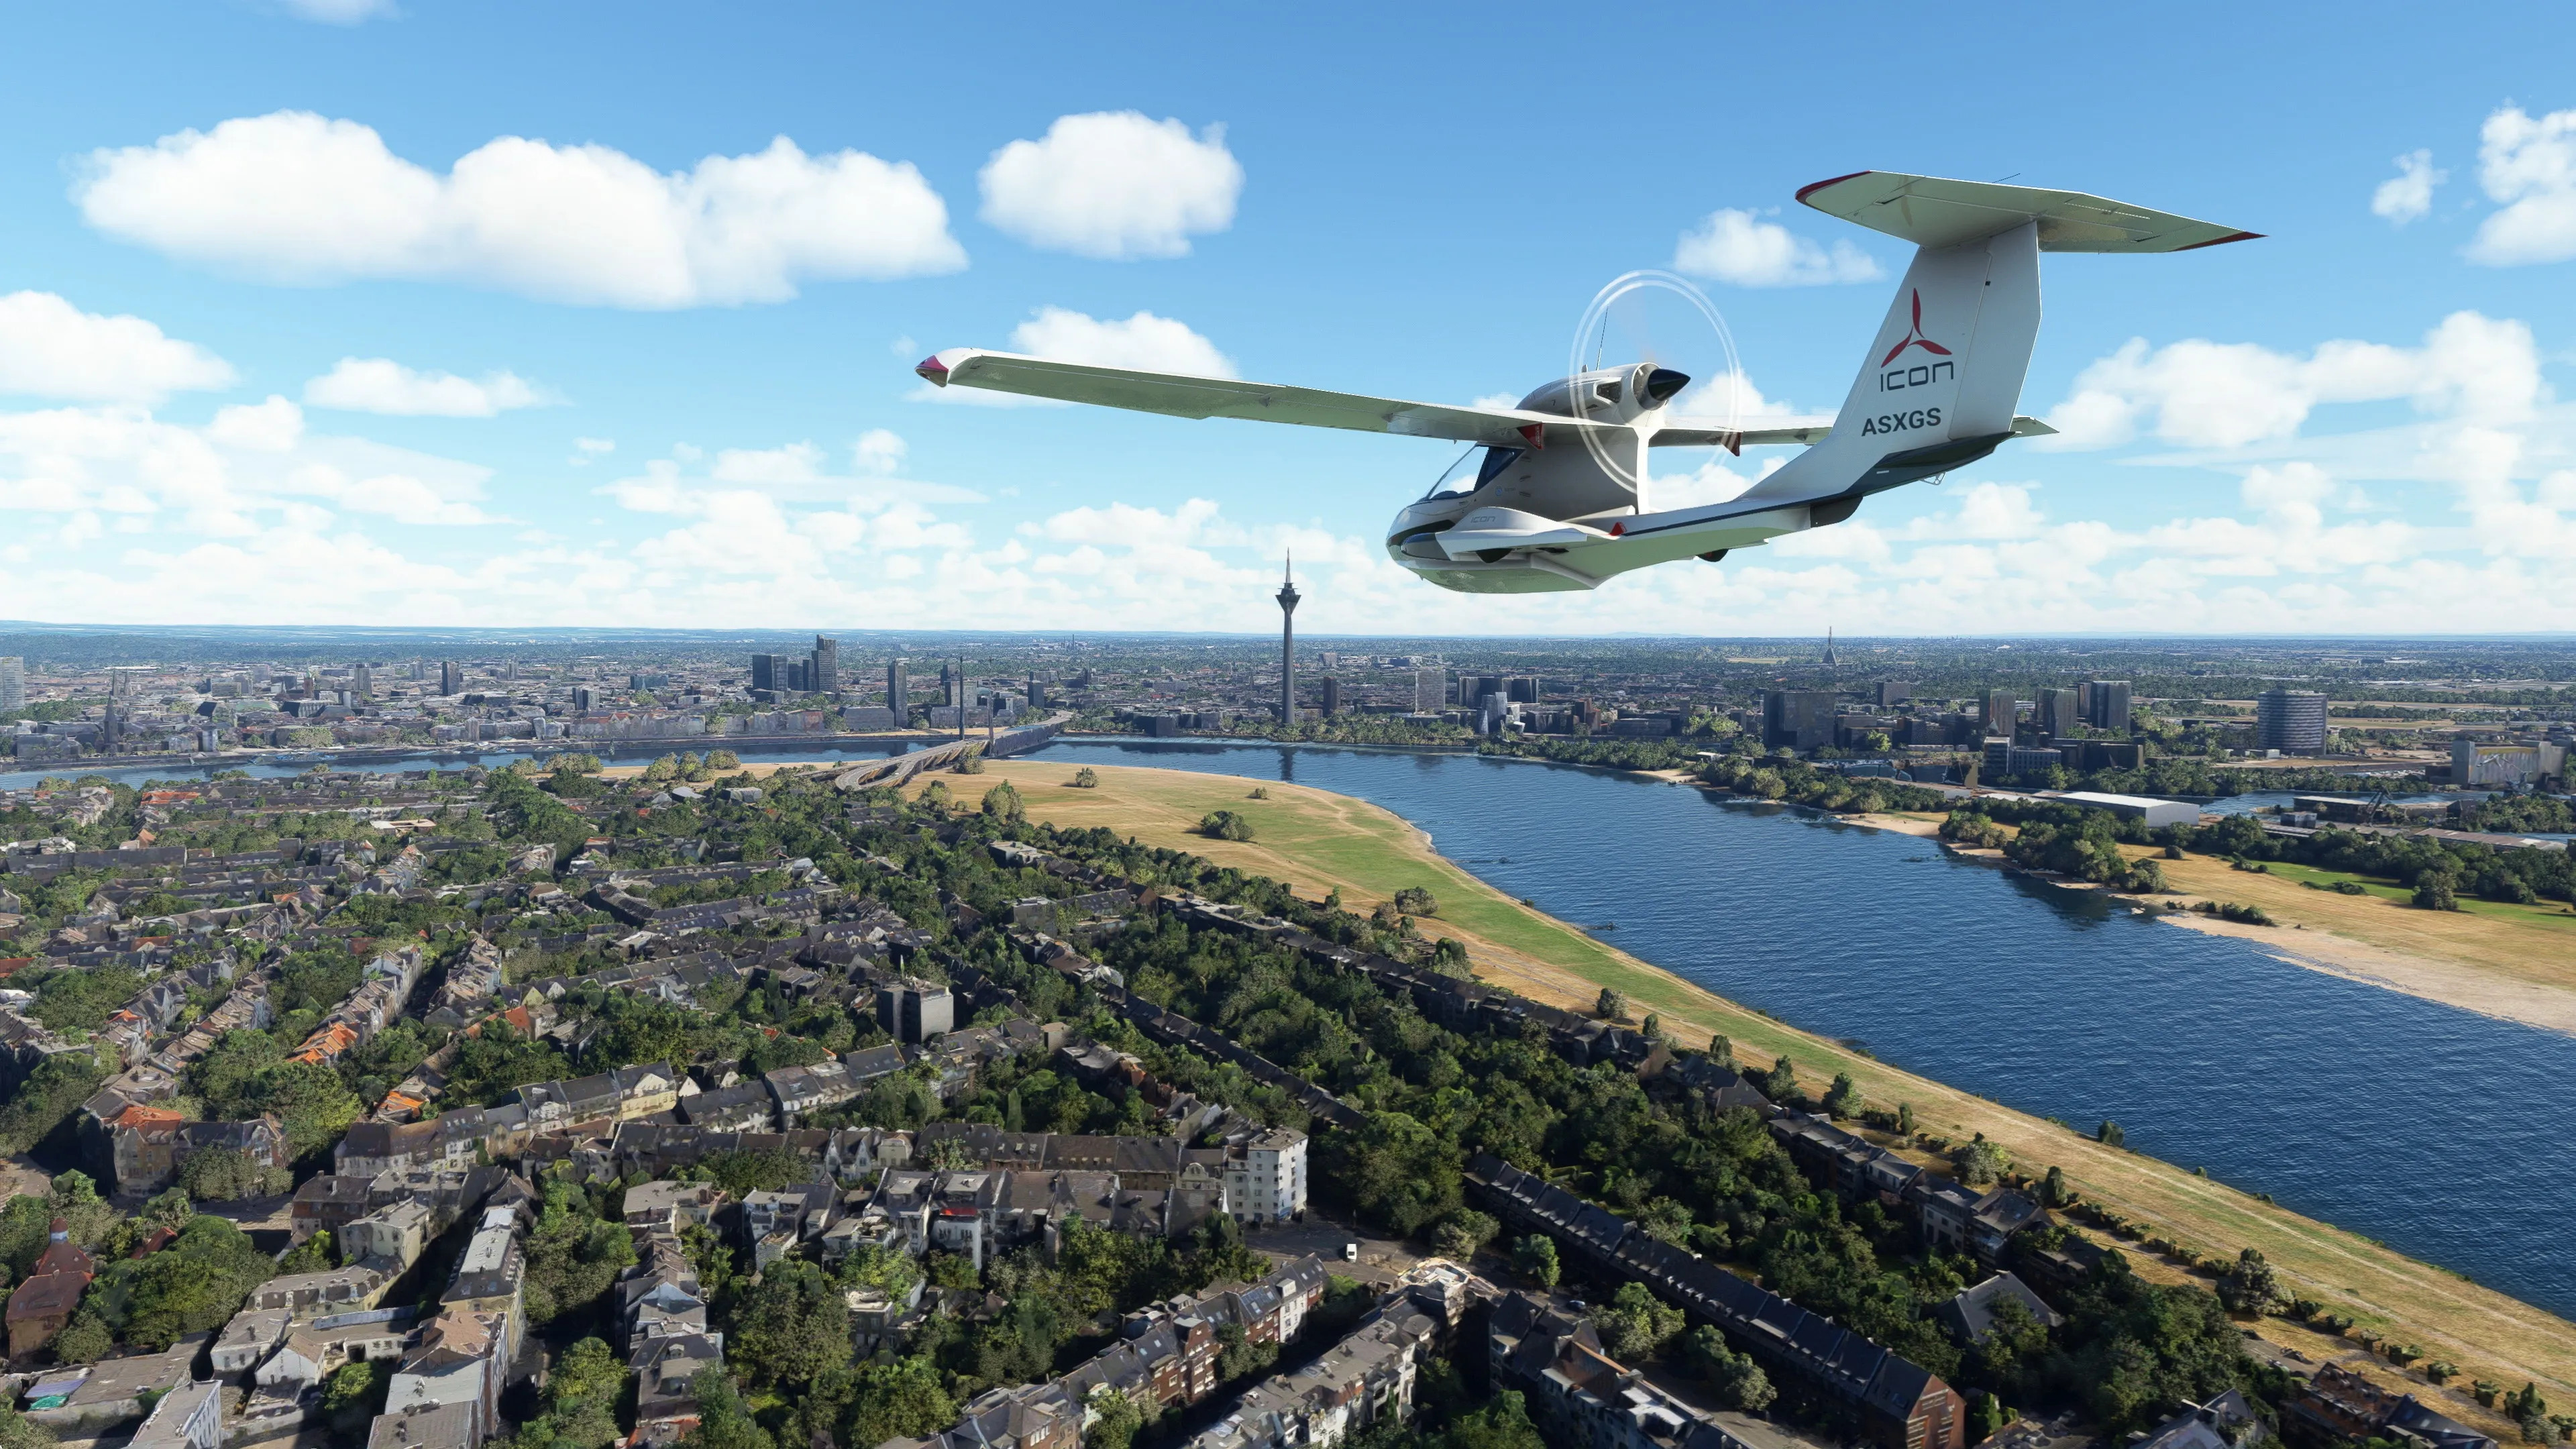 Microsoft Flight Simulator 40th Anniversary Deluxe Edition Steam Account